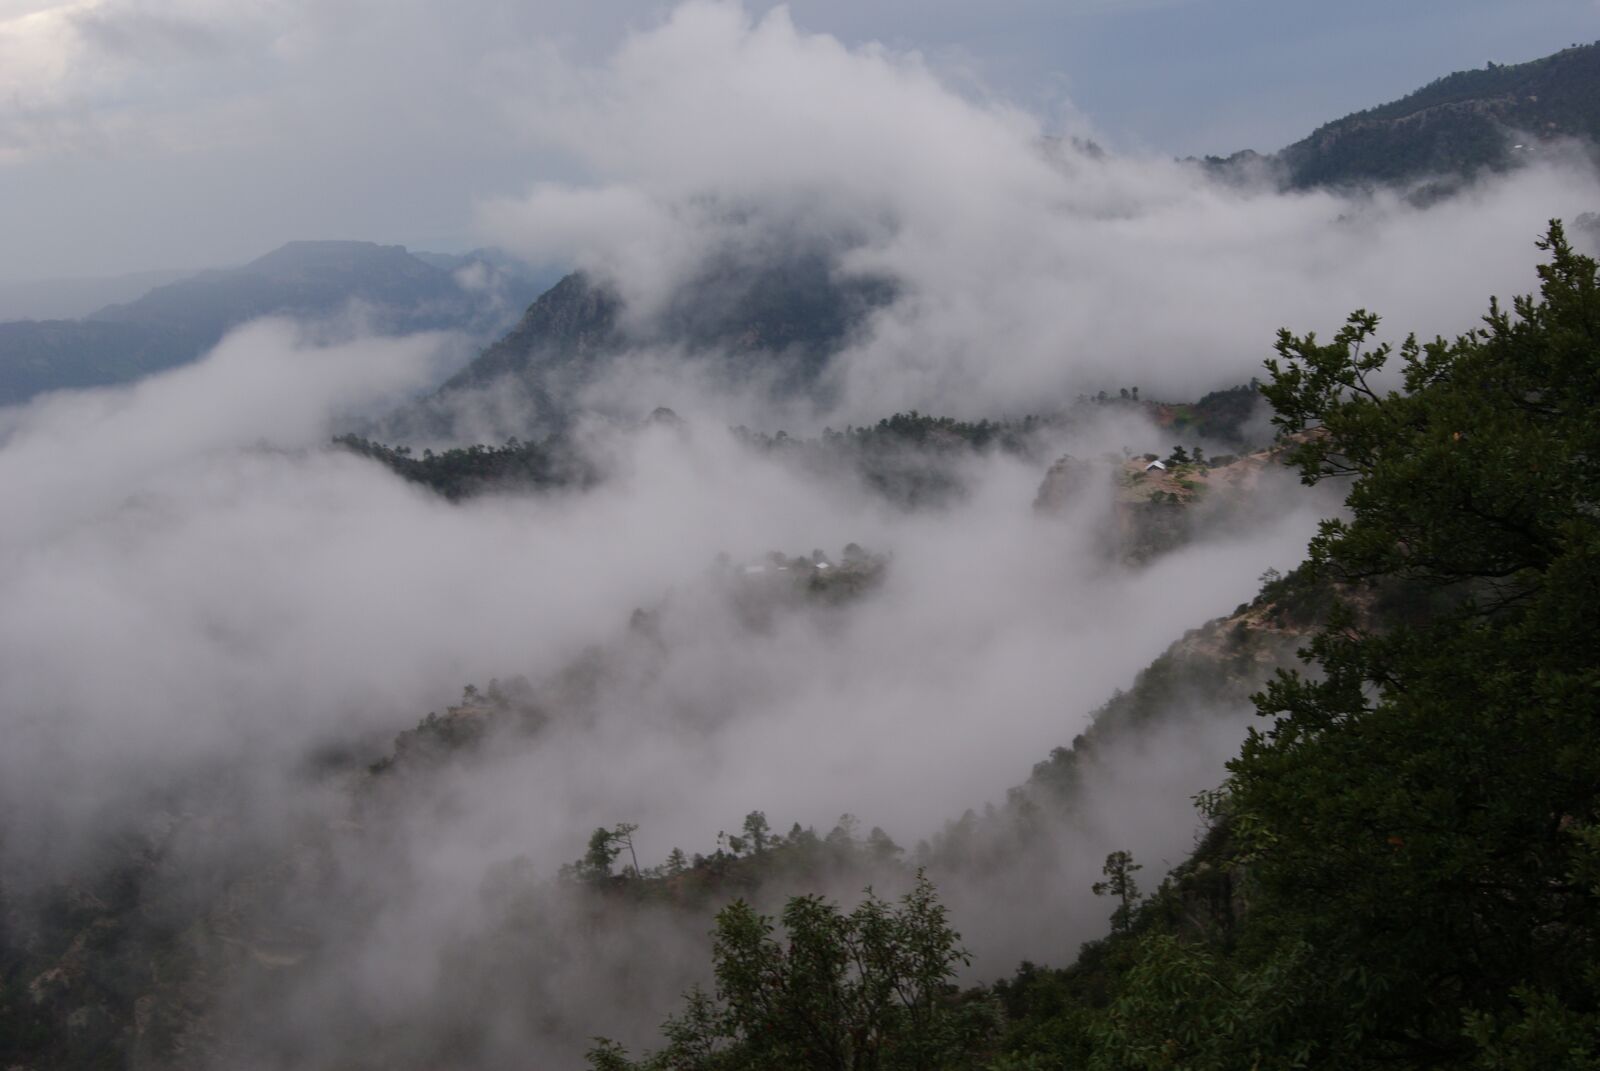 Sony Alpha DSLR-A230 sample photo. Mountains, fog, foggy photography